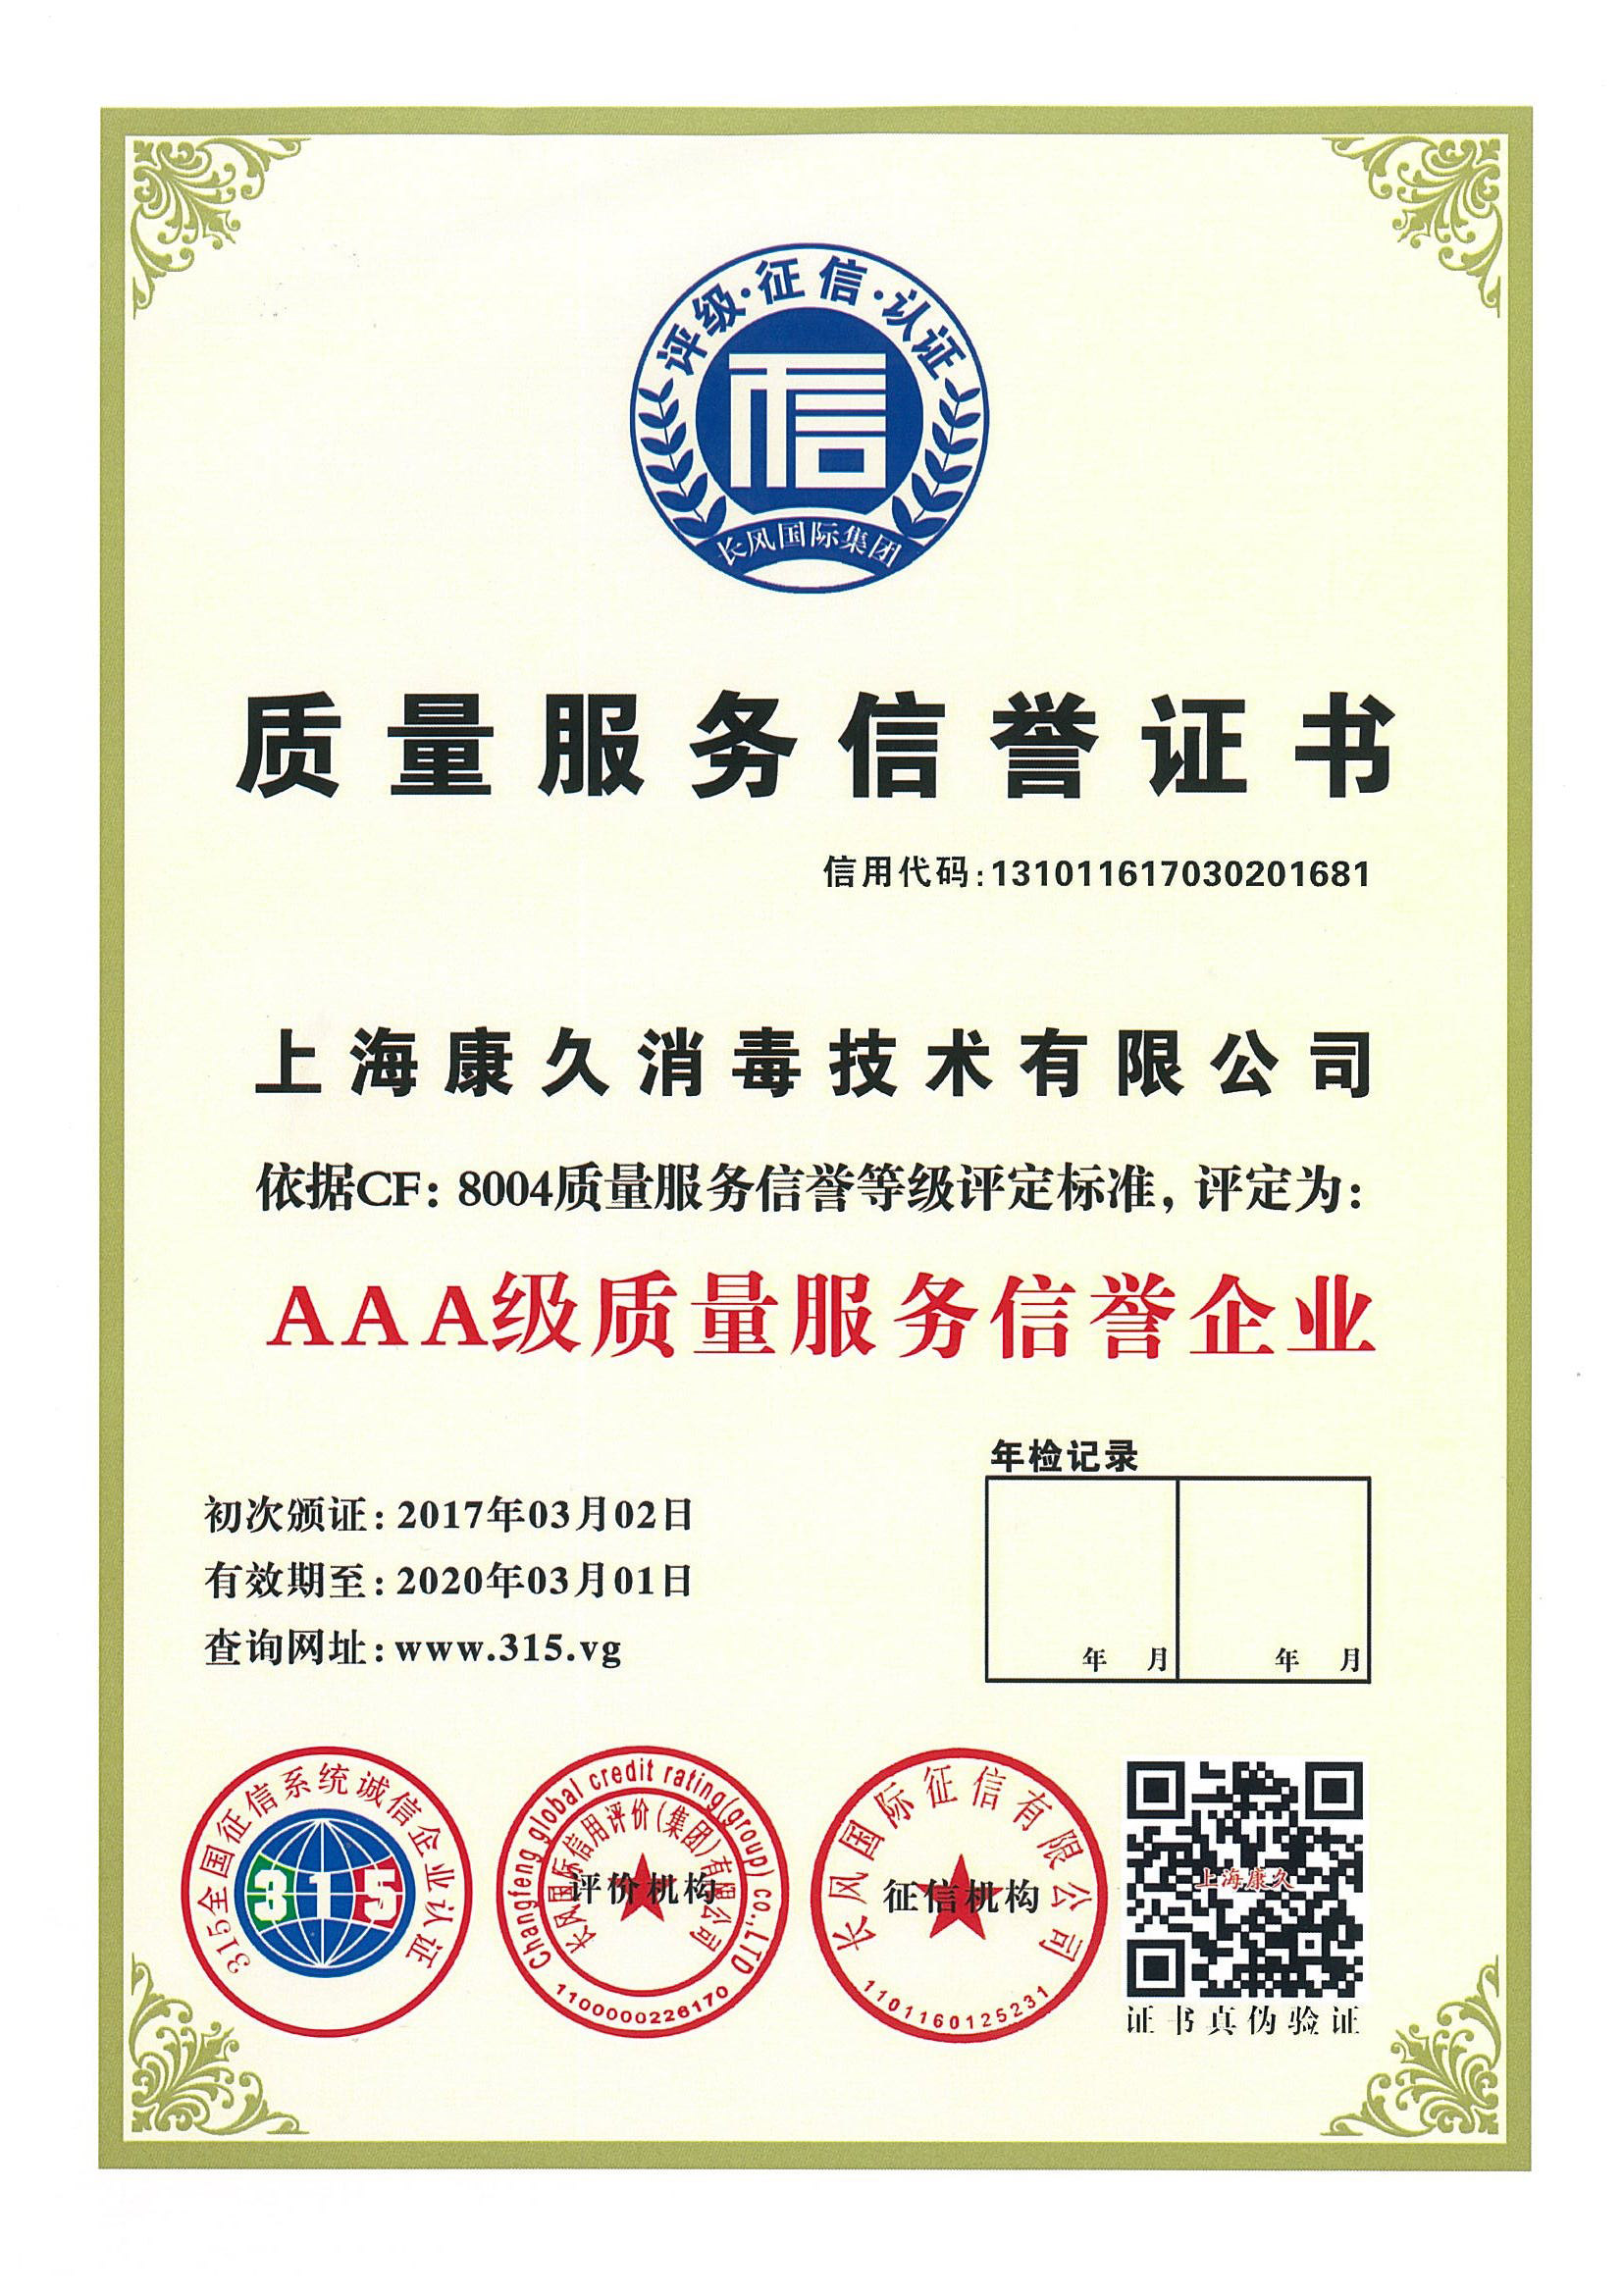 “卢湾质量服务信誉证书